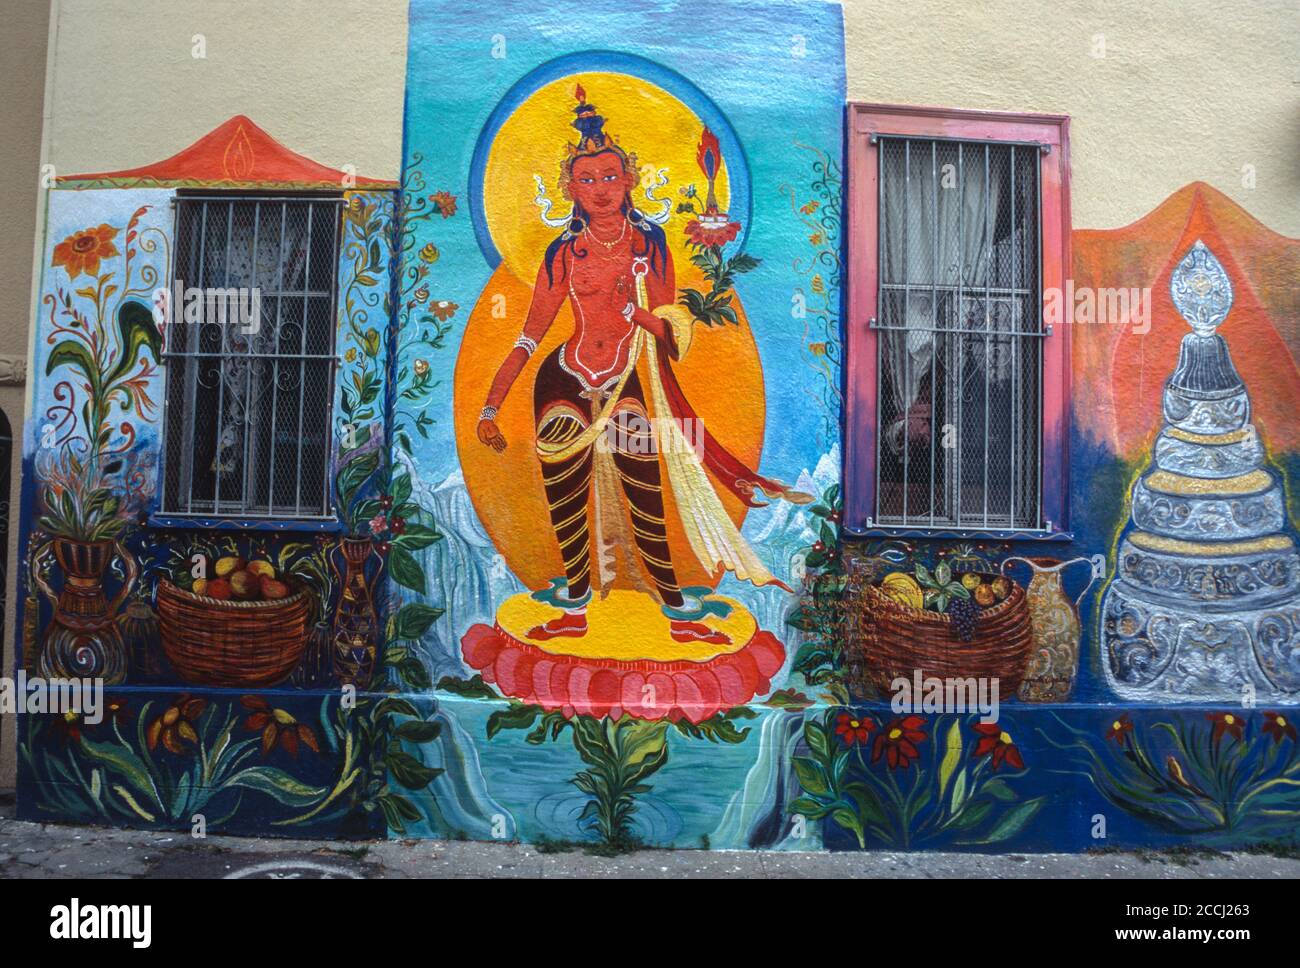 San Francisco, California, Stati Uniti. Distretto della missione, Murale della via balmy 'Manjushri', Deità buddista tibetana della saggezza, dedicata a Dalai lama, di Marta Ayala. Foto Stock